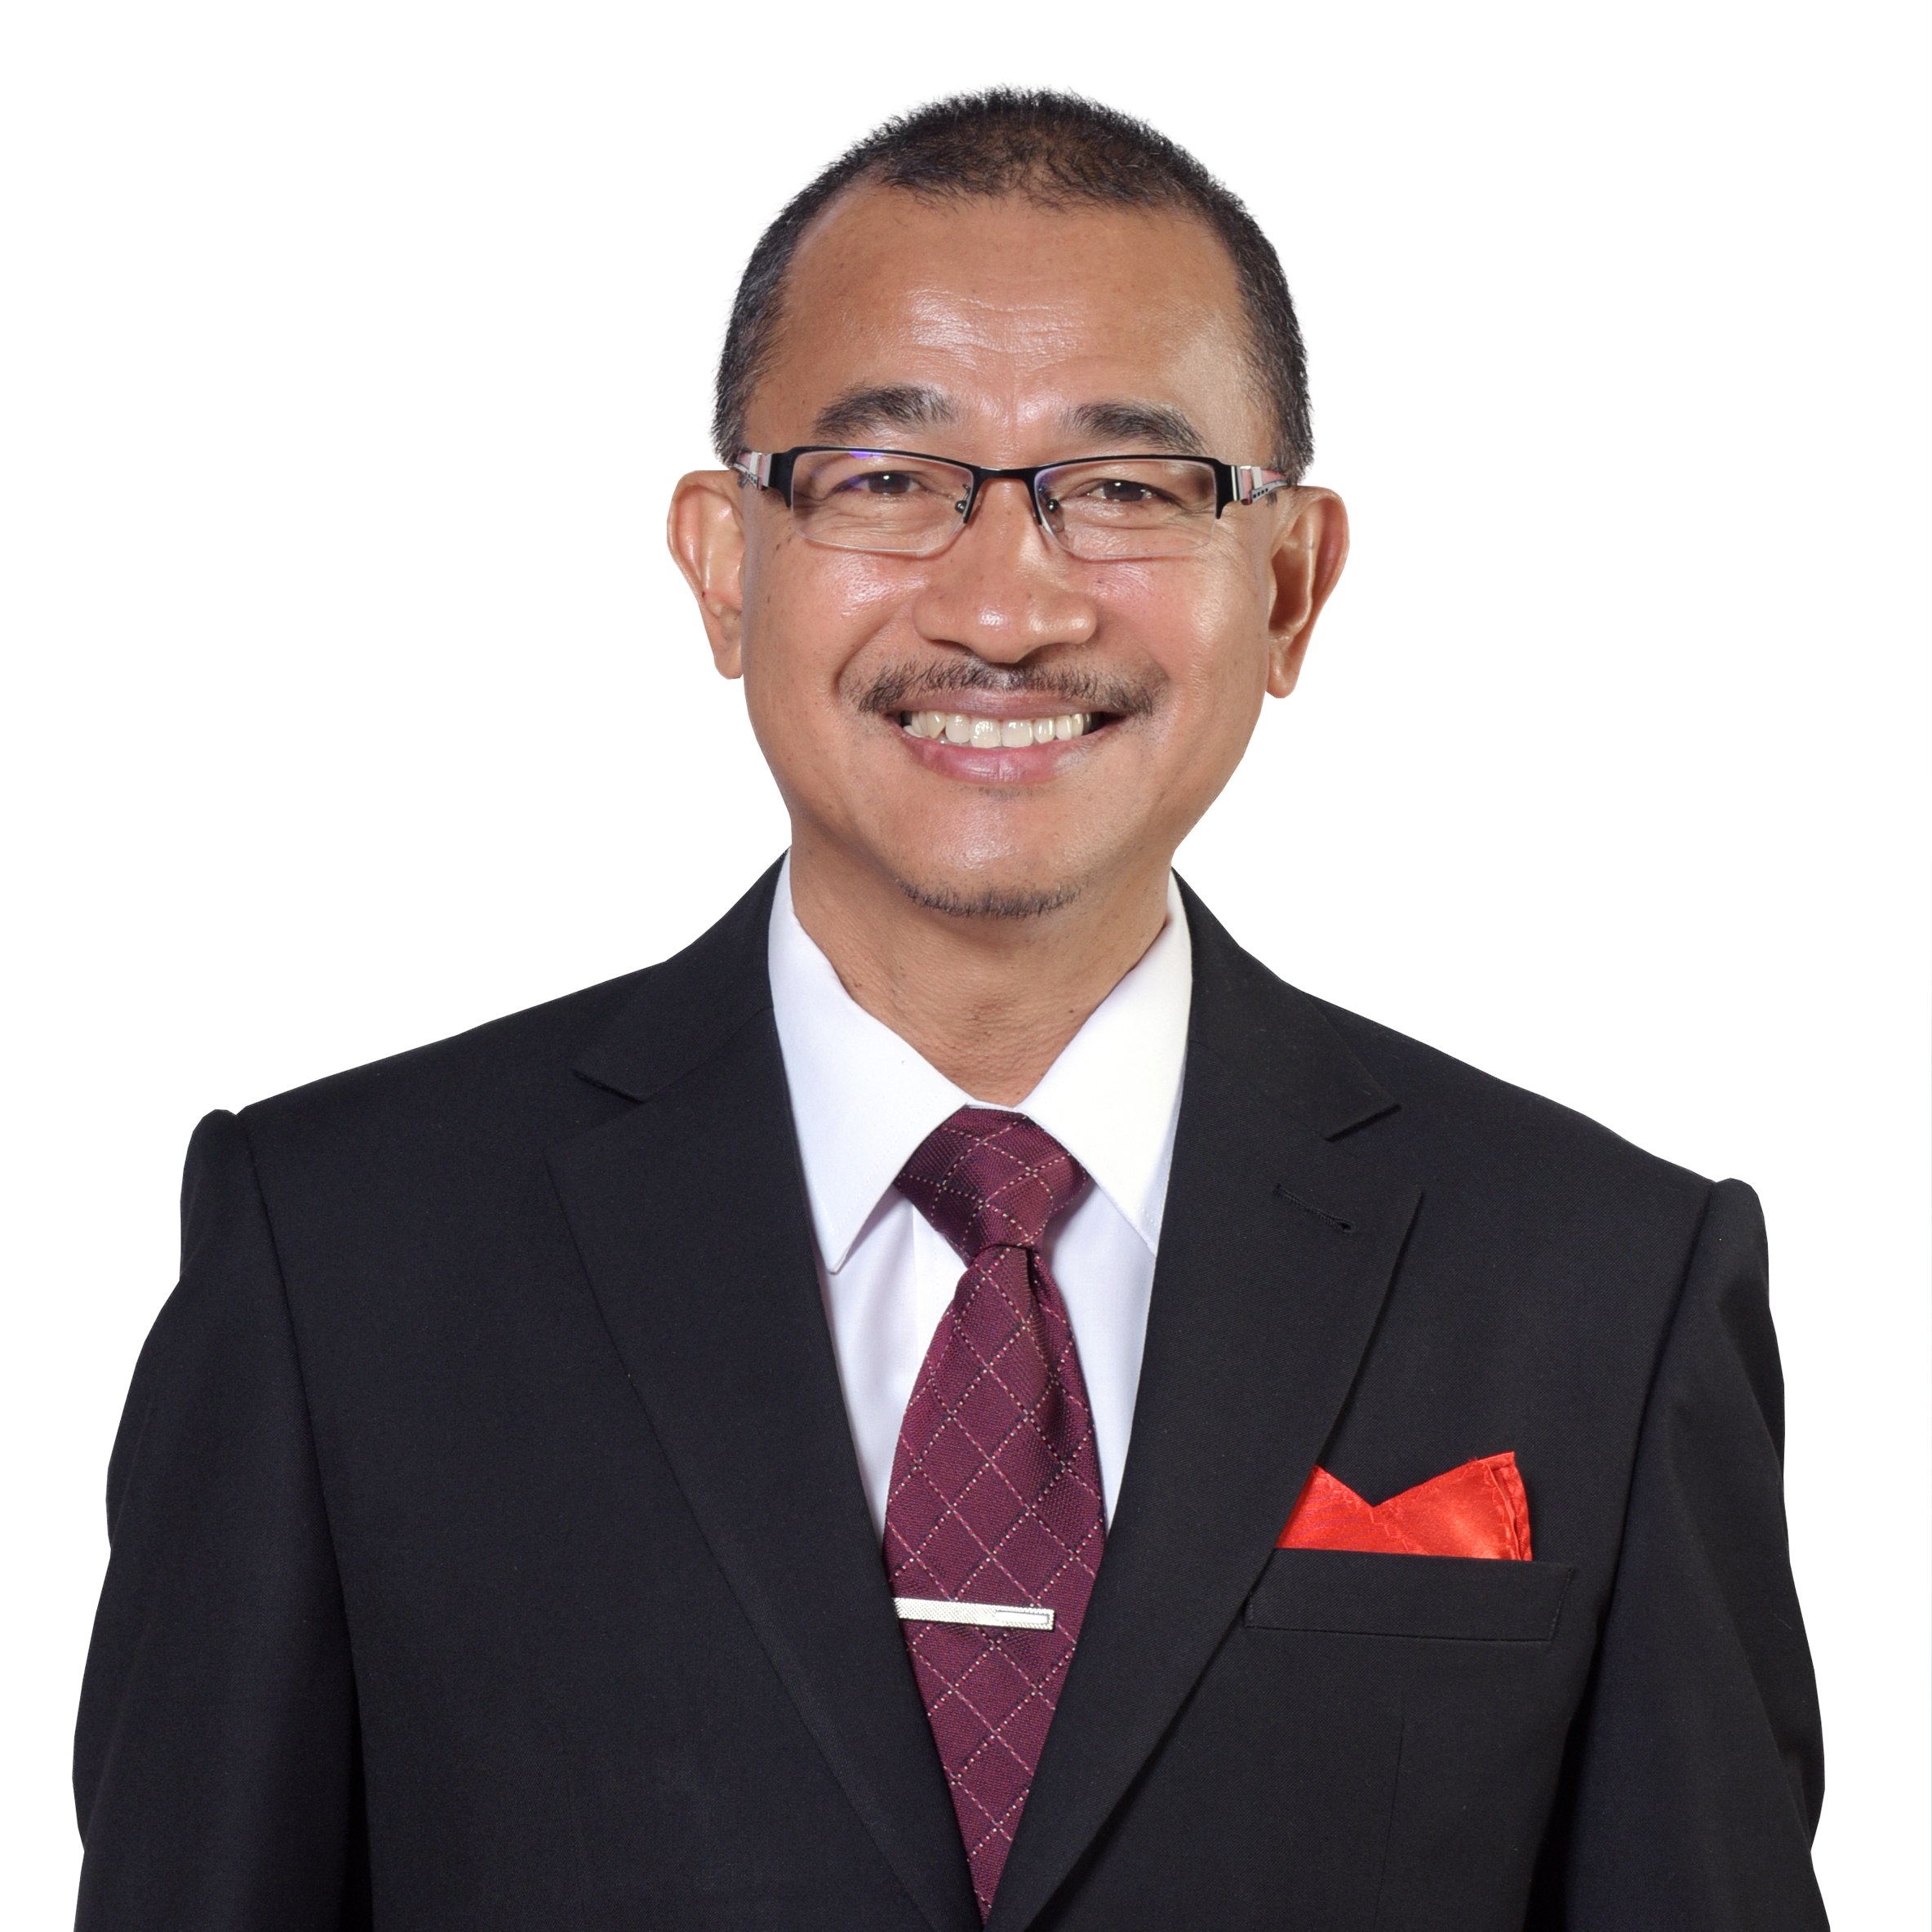 Nama timbalan perdana menteri malaysia 2021